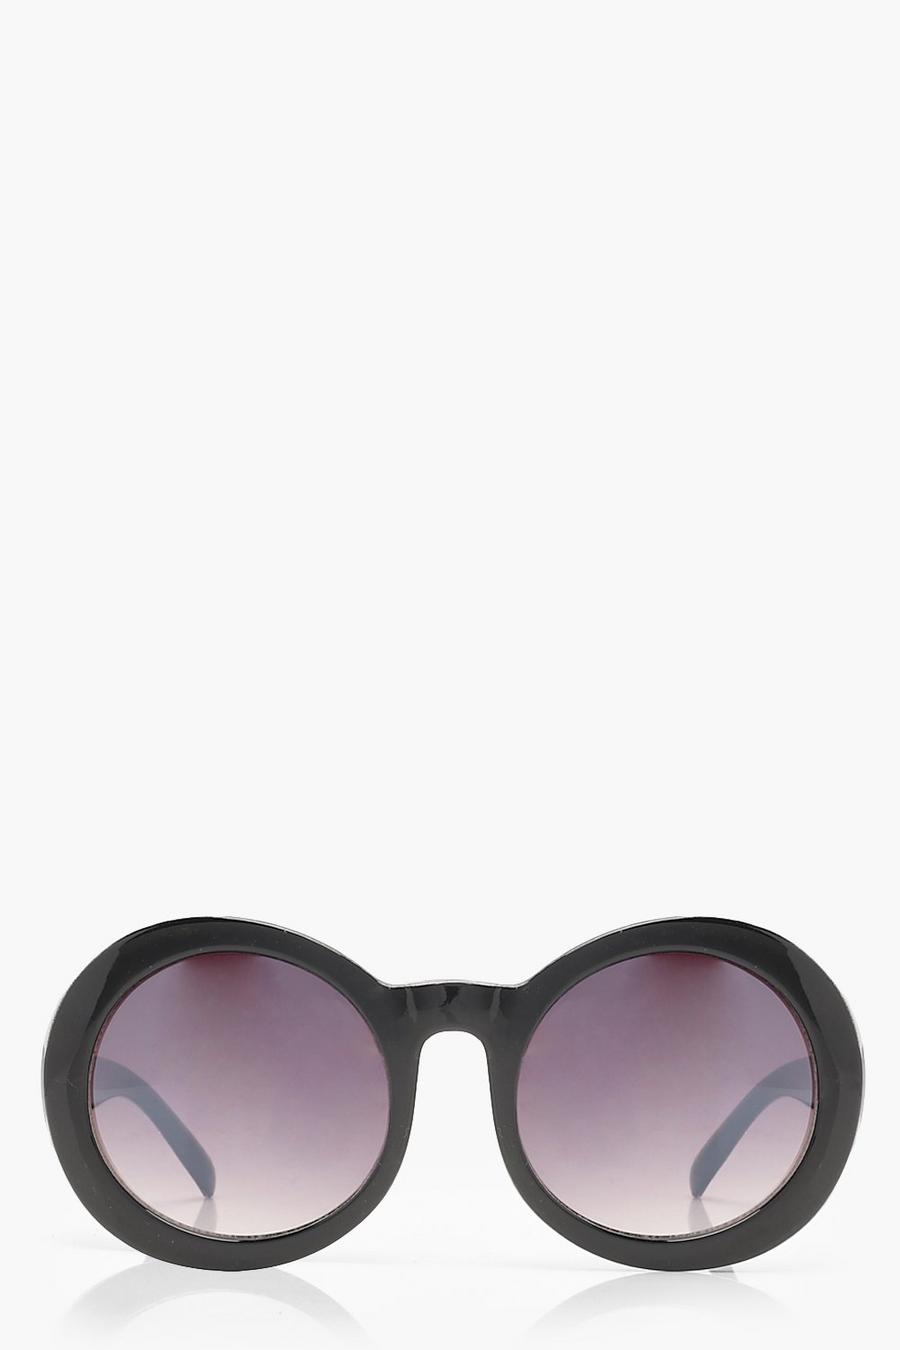 Schwarze runde Oversize Retro-Sonnenbrille, Black